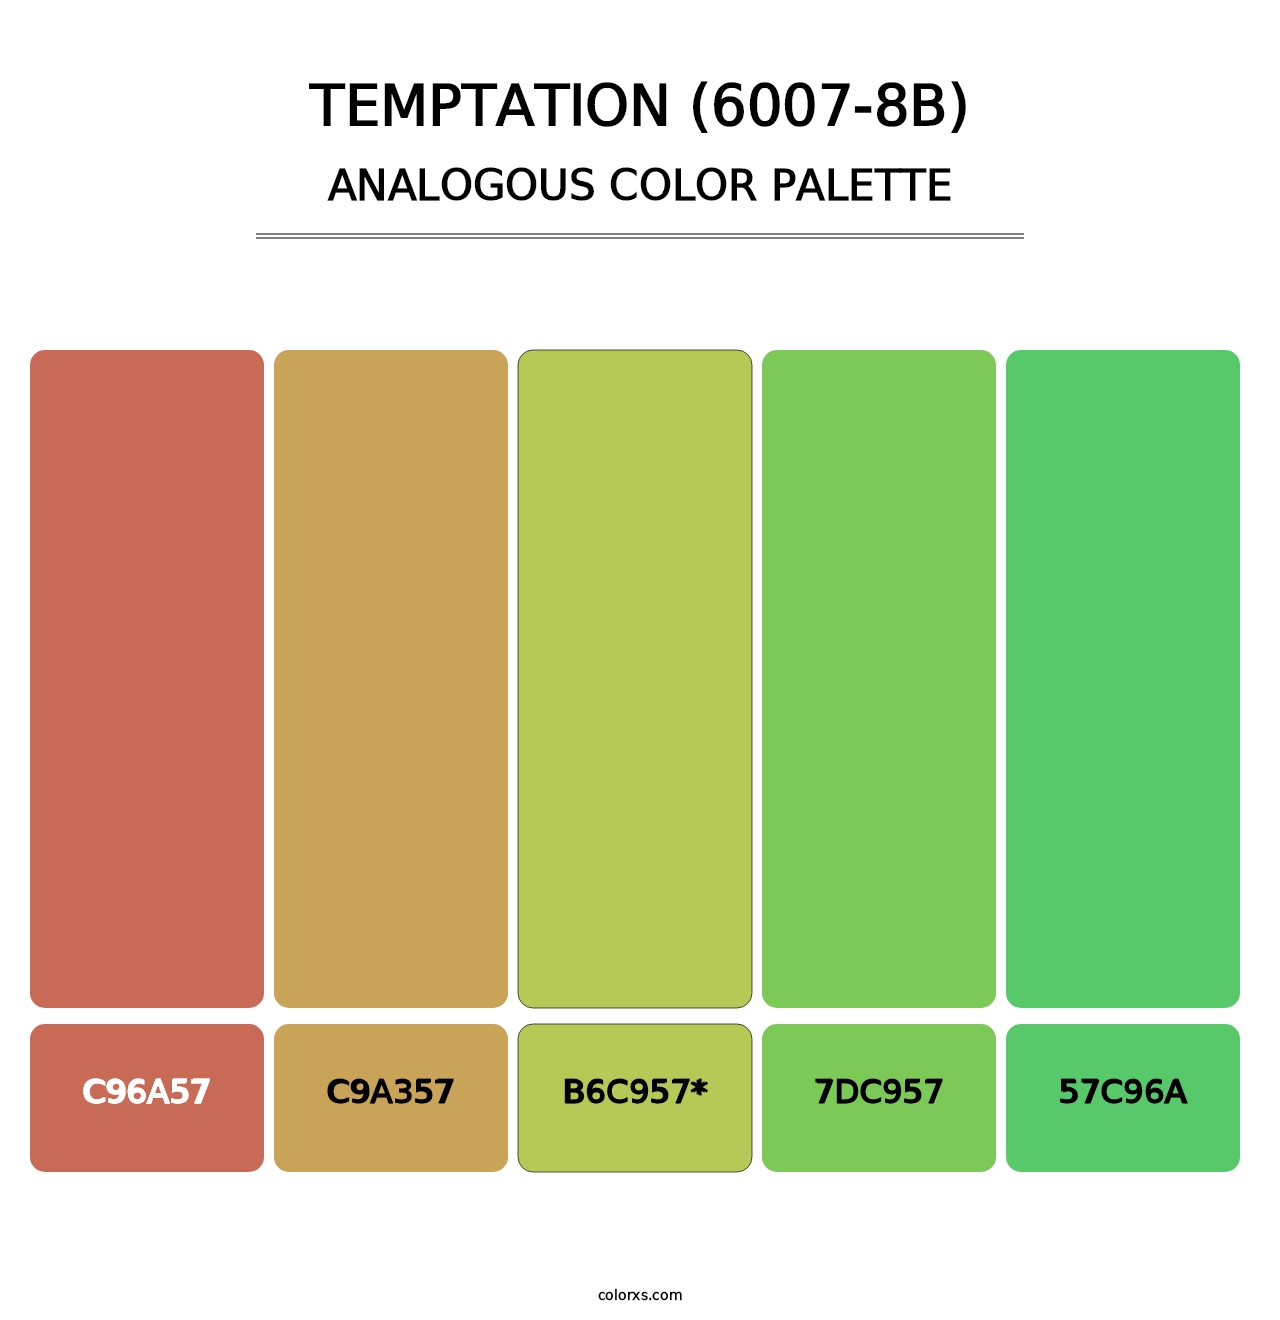 Temptation (6007-8B) - Analogous Color Palette